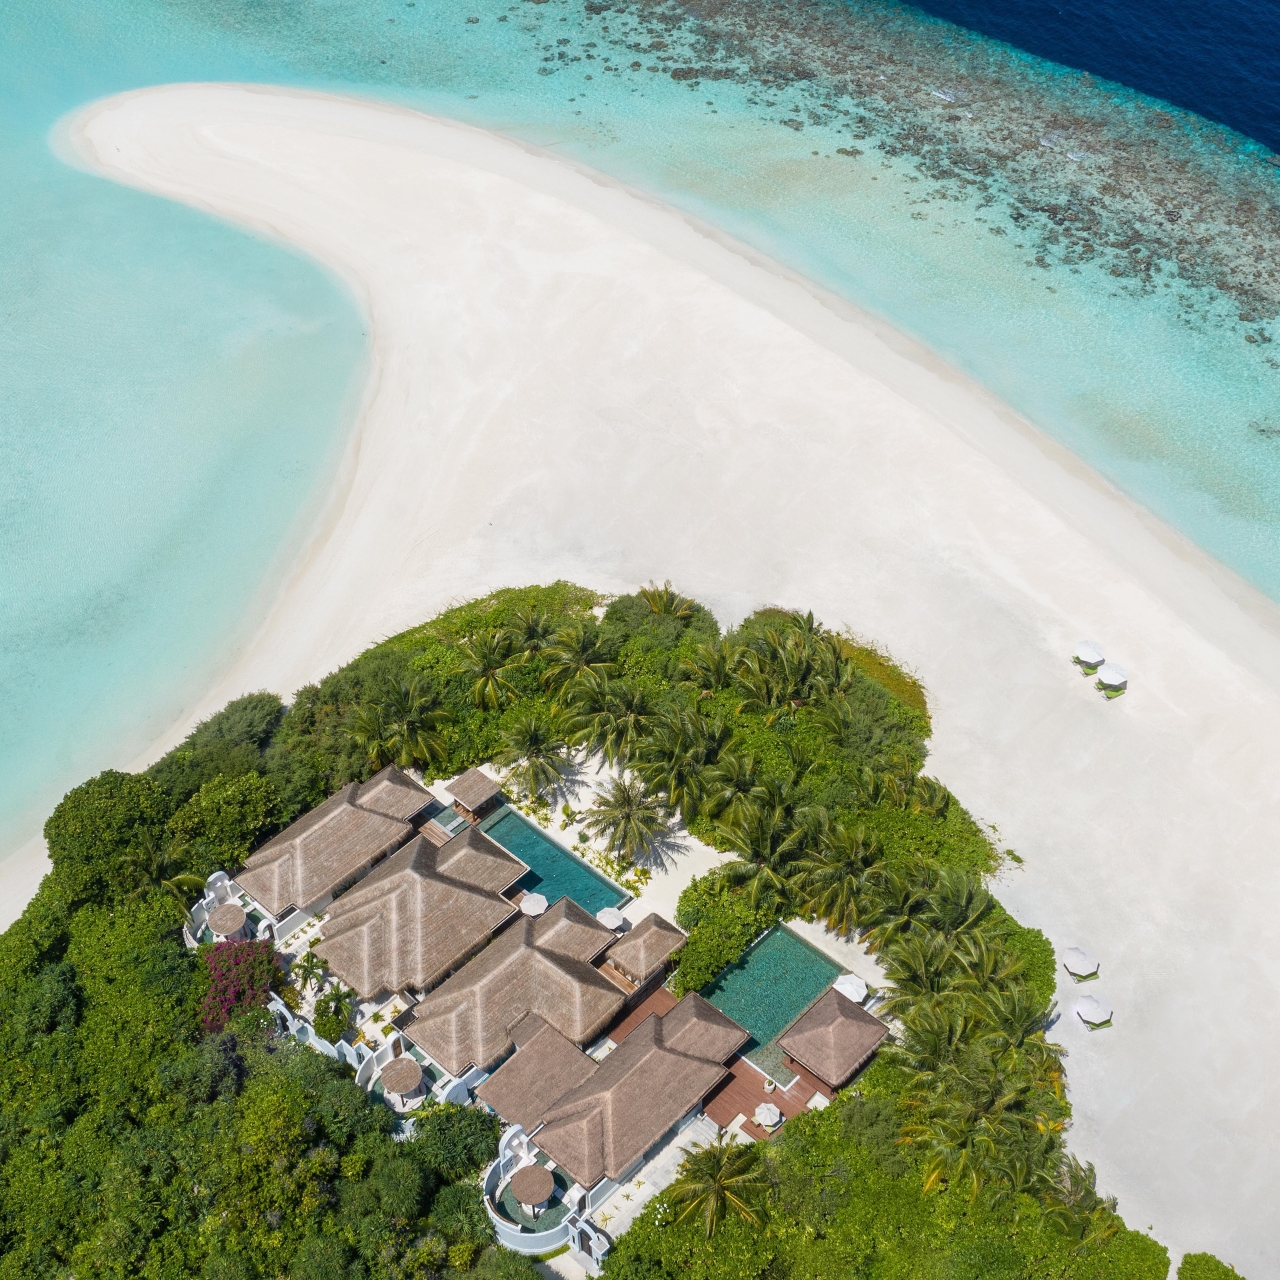 Anantara kihavah maldives villas